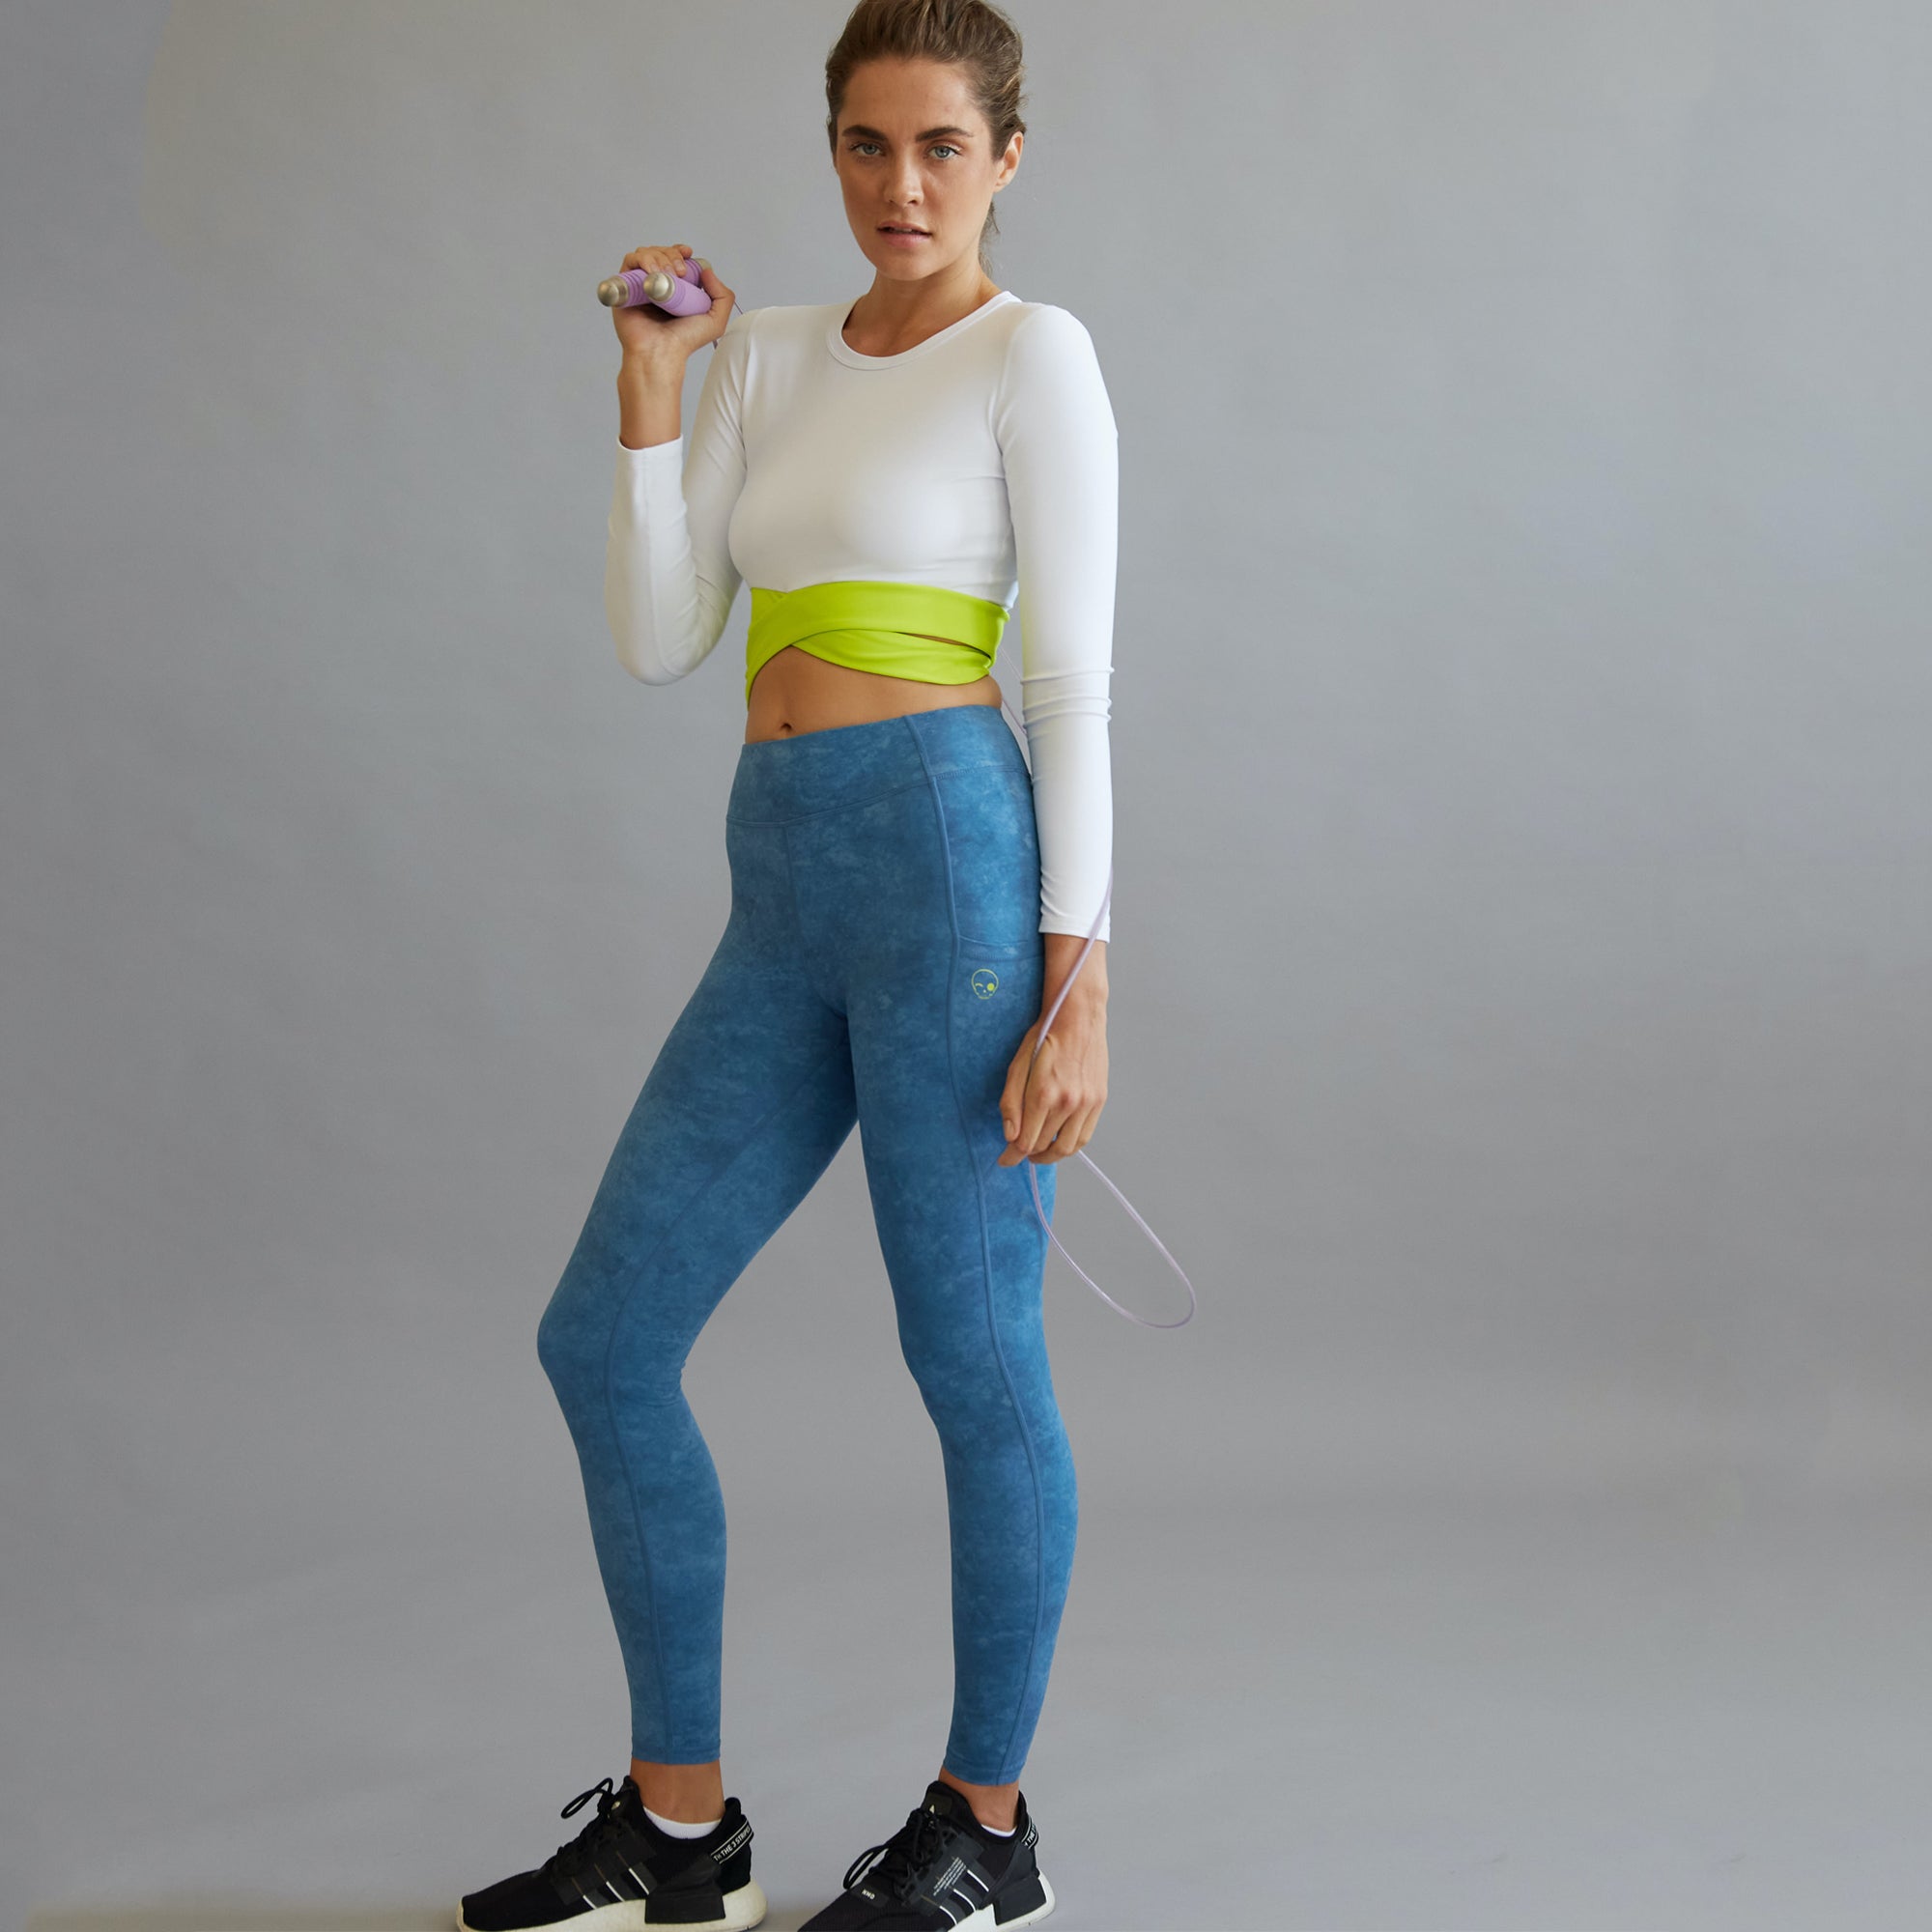 Buy Yoga Pants For Women Online - Zoe Leggings - SCHAAD Active – Schaad